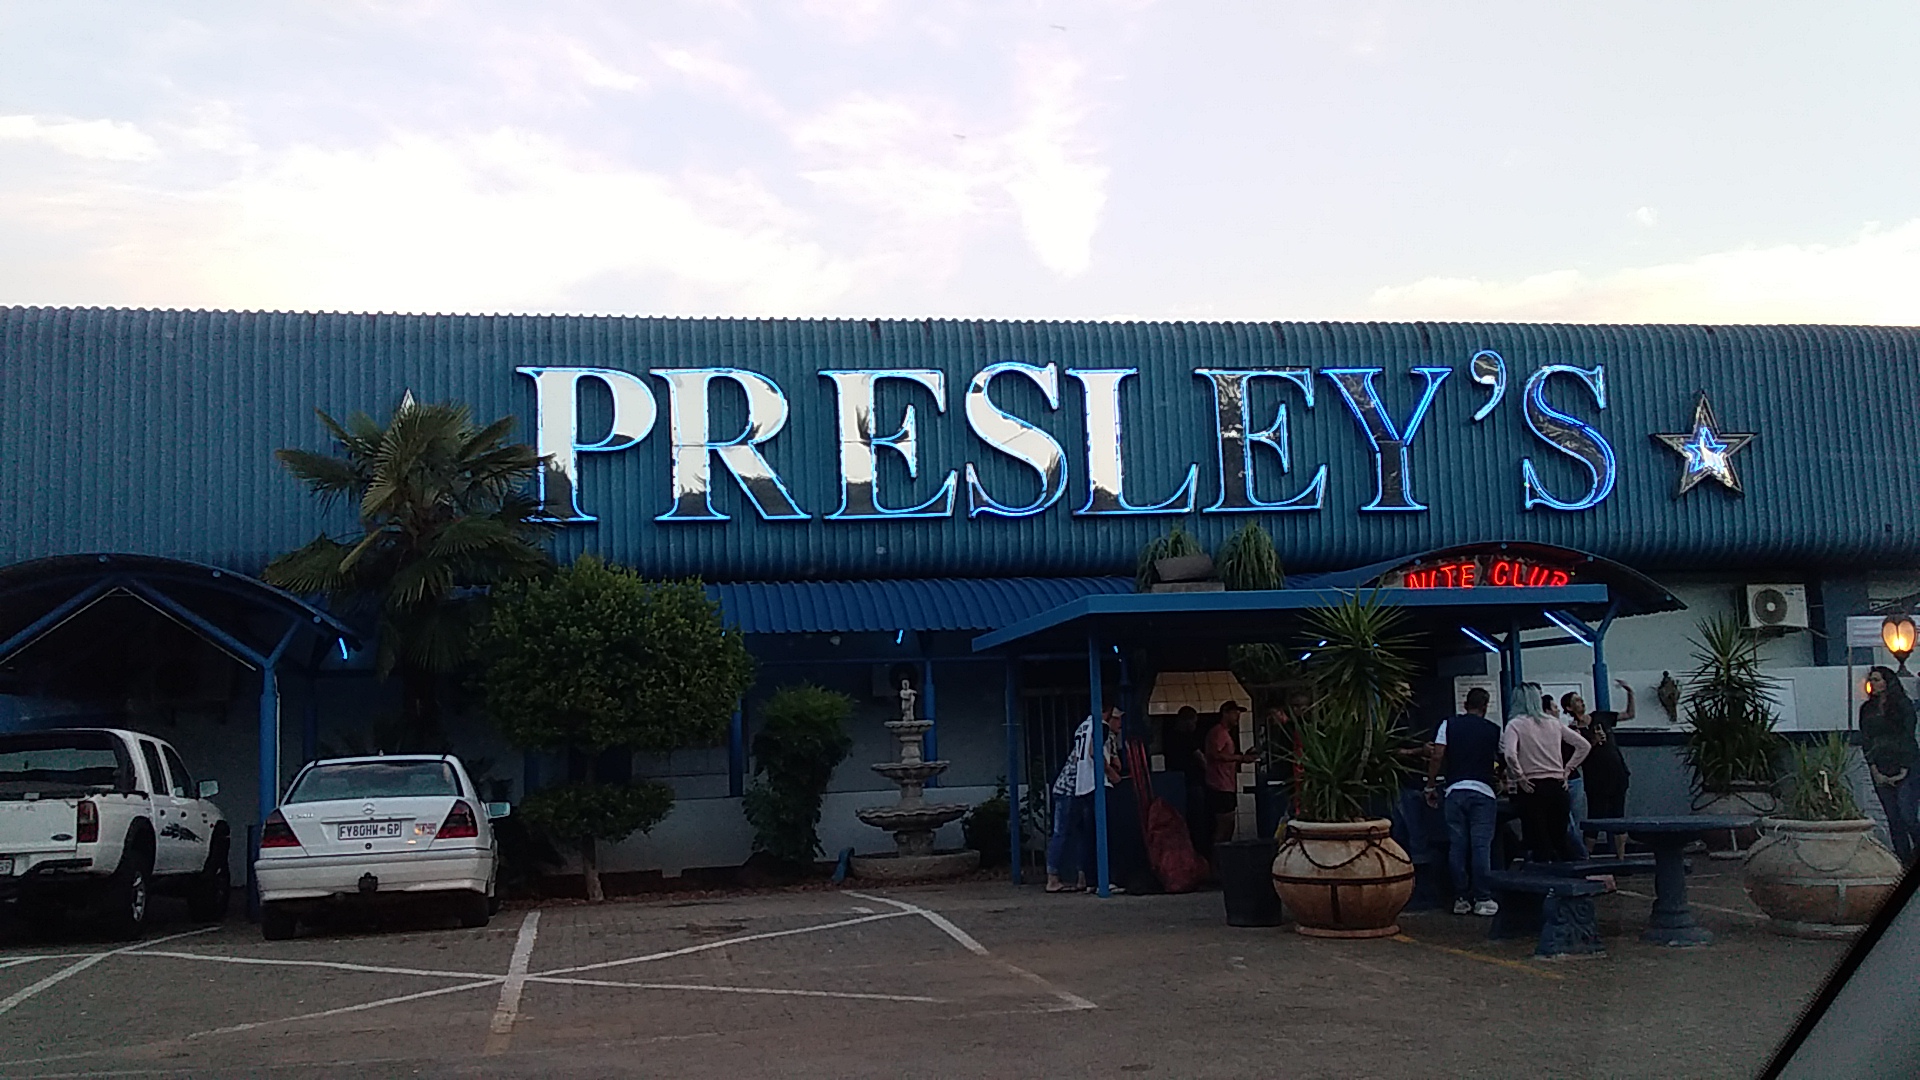 Presley’s